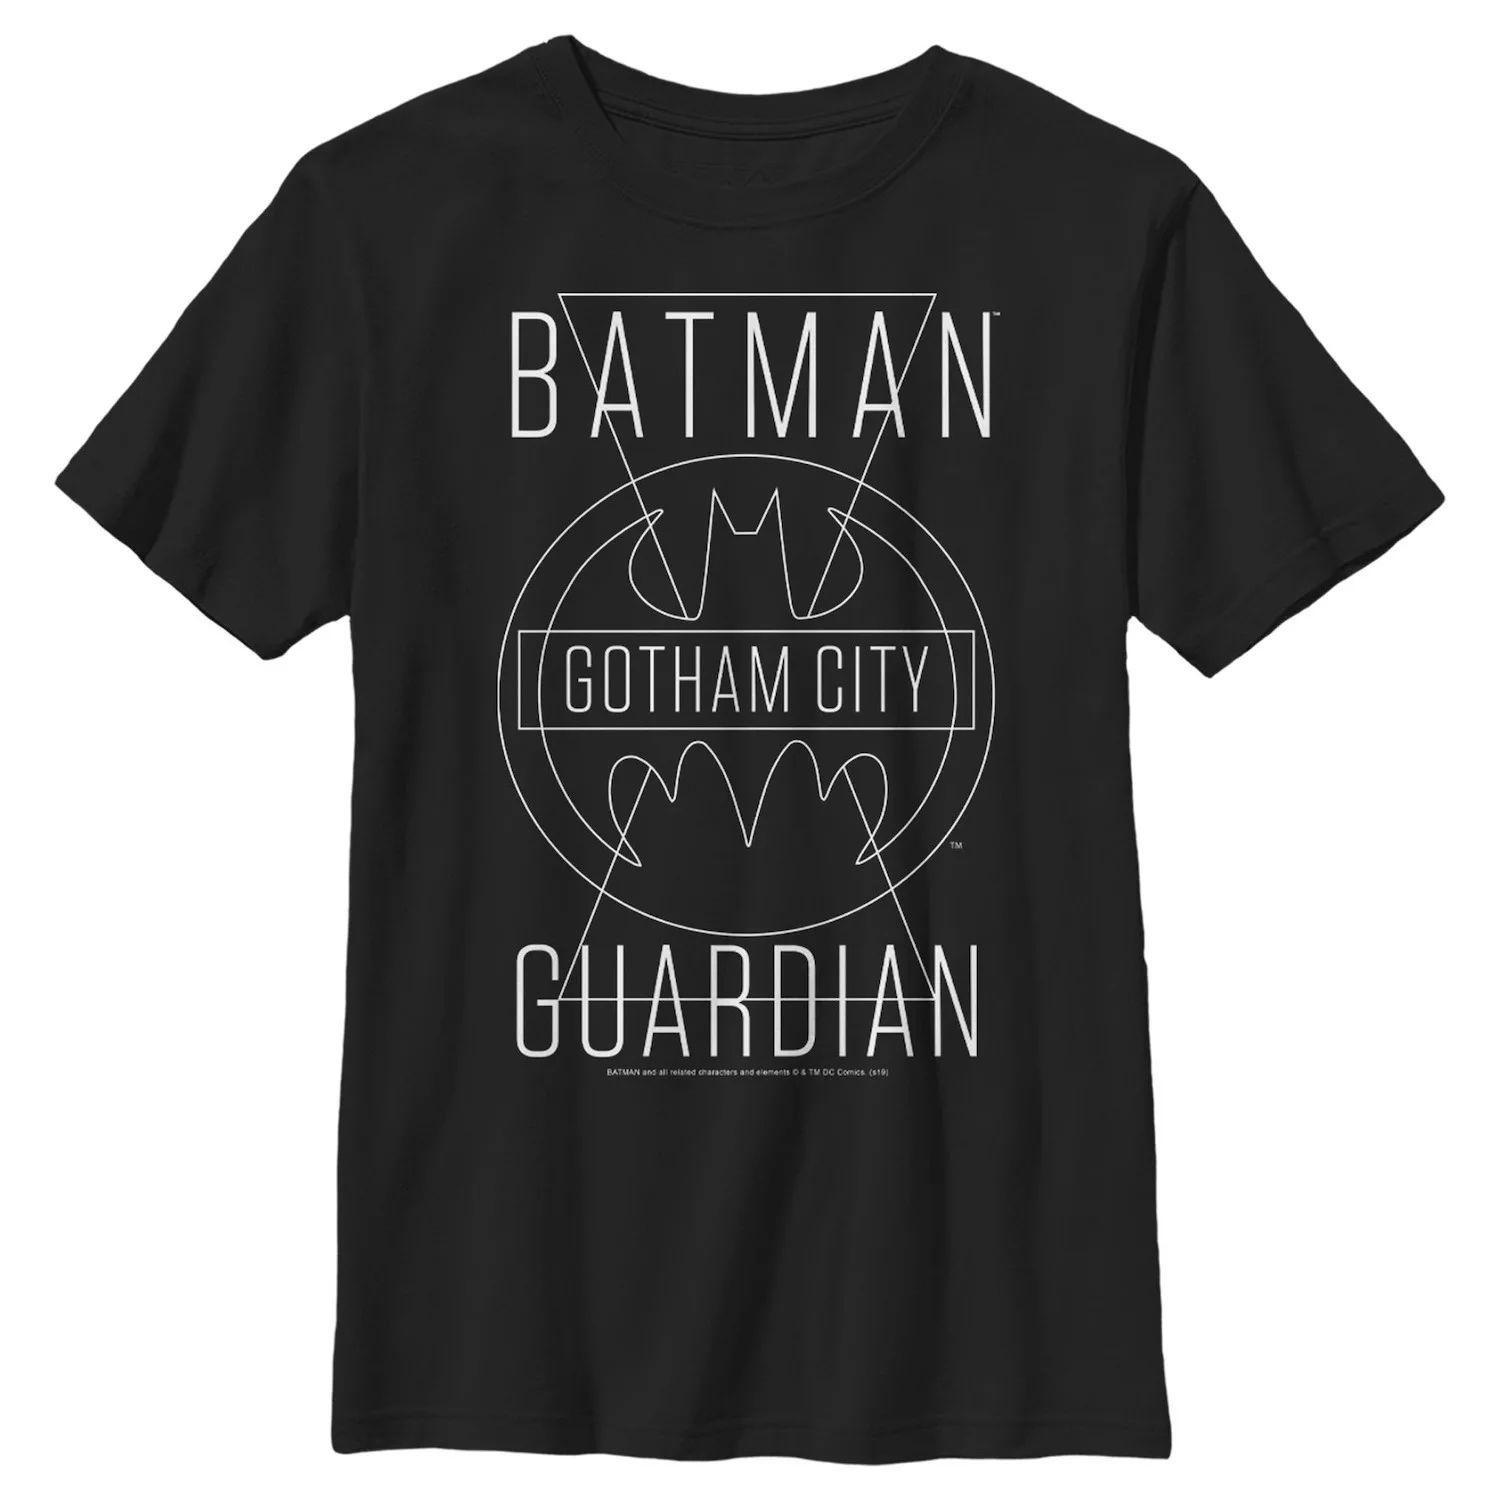 Футболка с графическим рисунком и текстовым плакатом для мальчиков 8–20 лет из комиксов DC Бэтмен Готэм-сити Guardian DC Comics